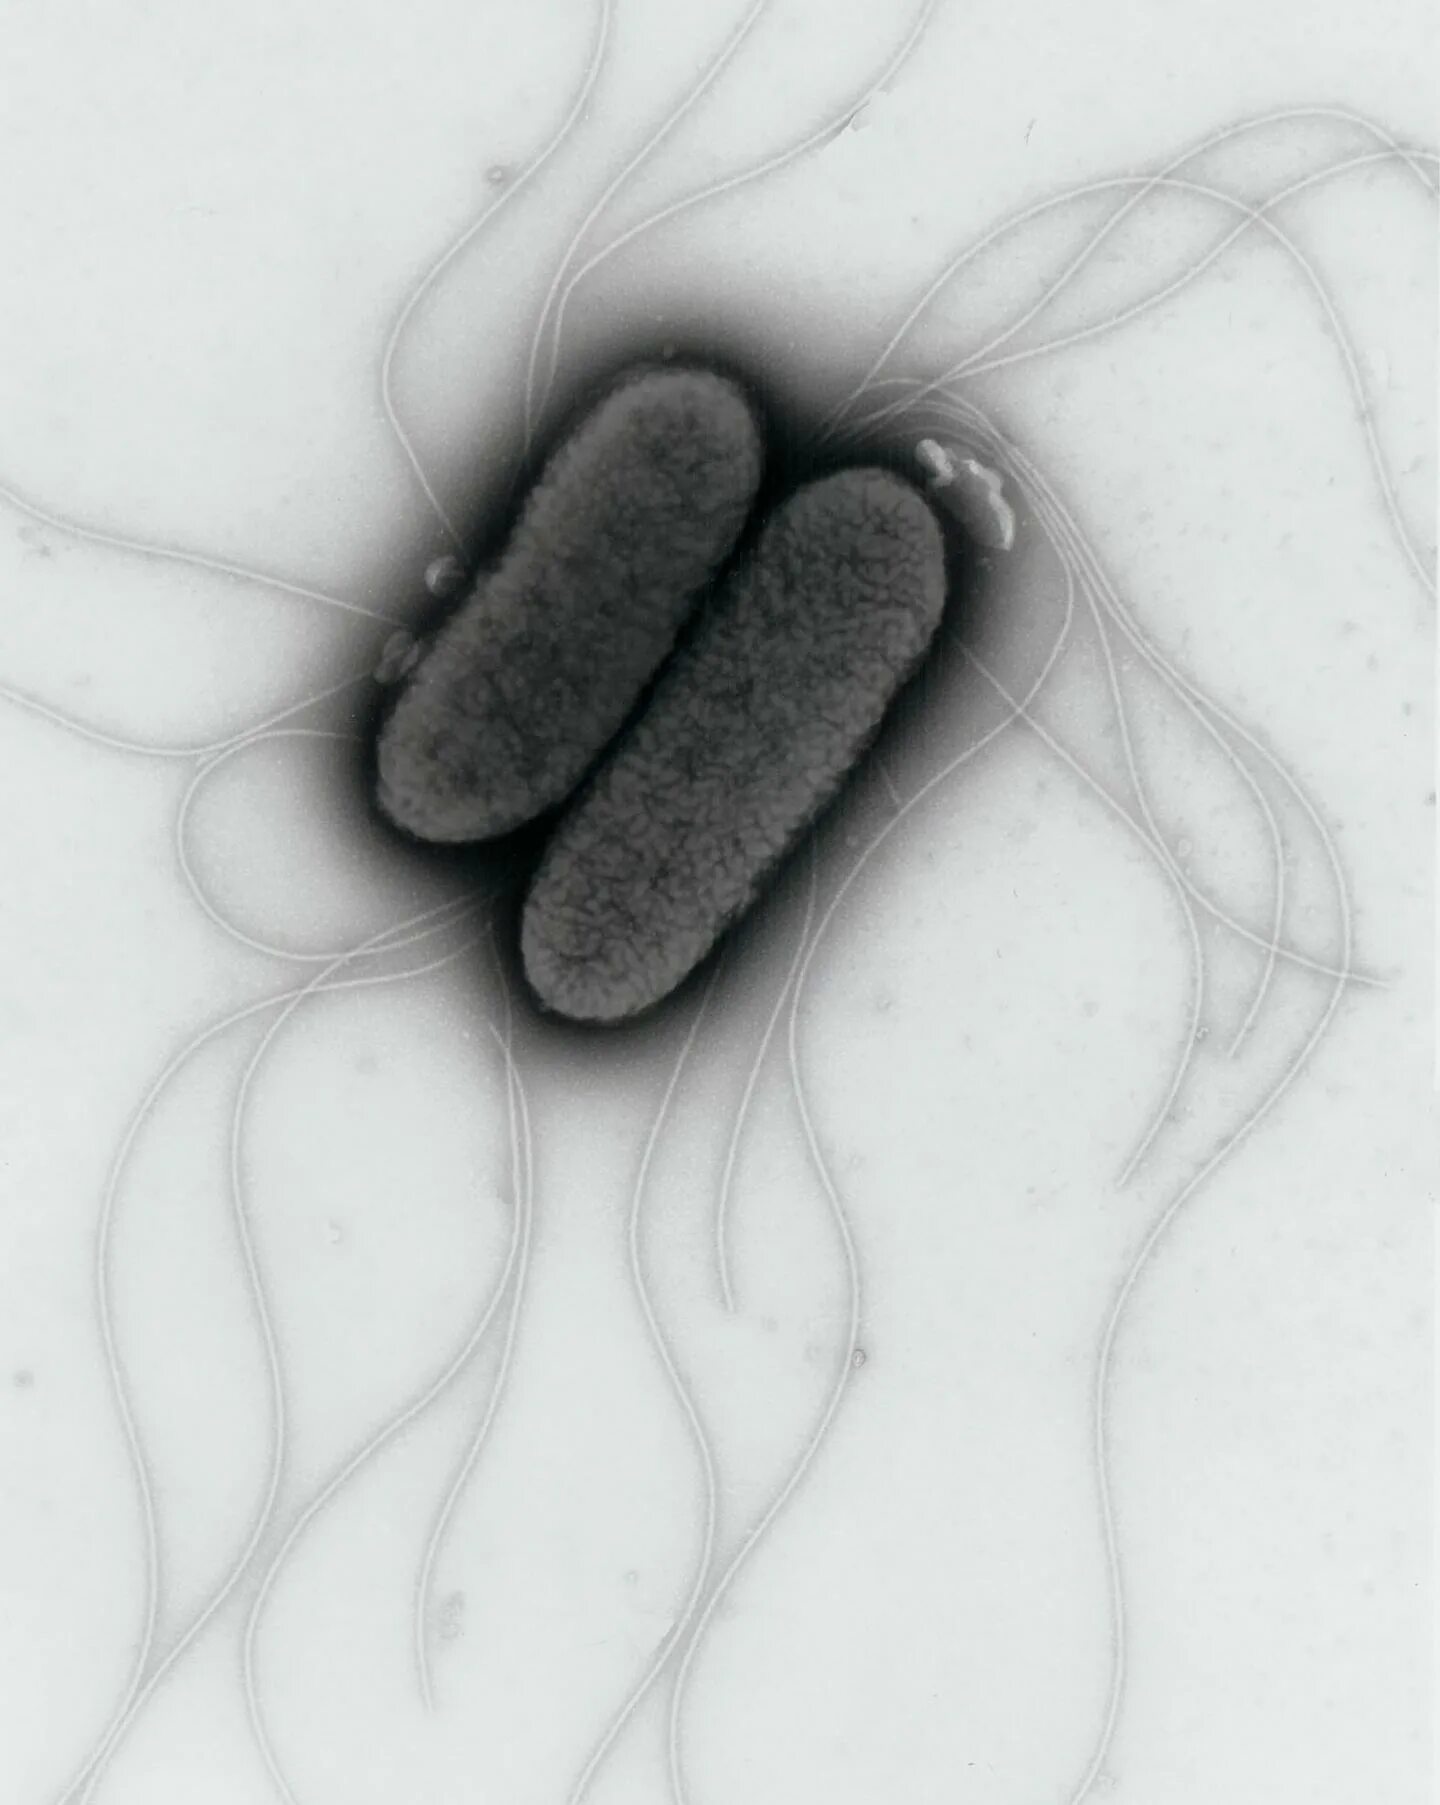 Бактерия сальмонелла Тифи. Сальмонелла тифимуриум. Сальмонелла — бацилла. Сальмонеллез бактерия